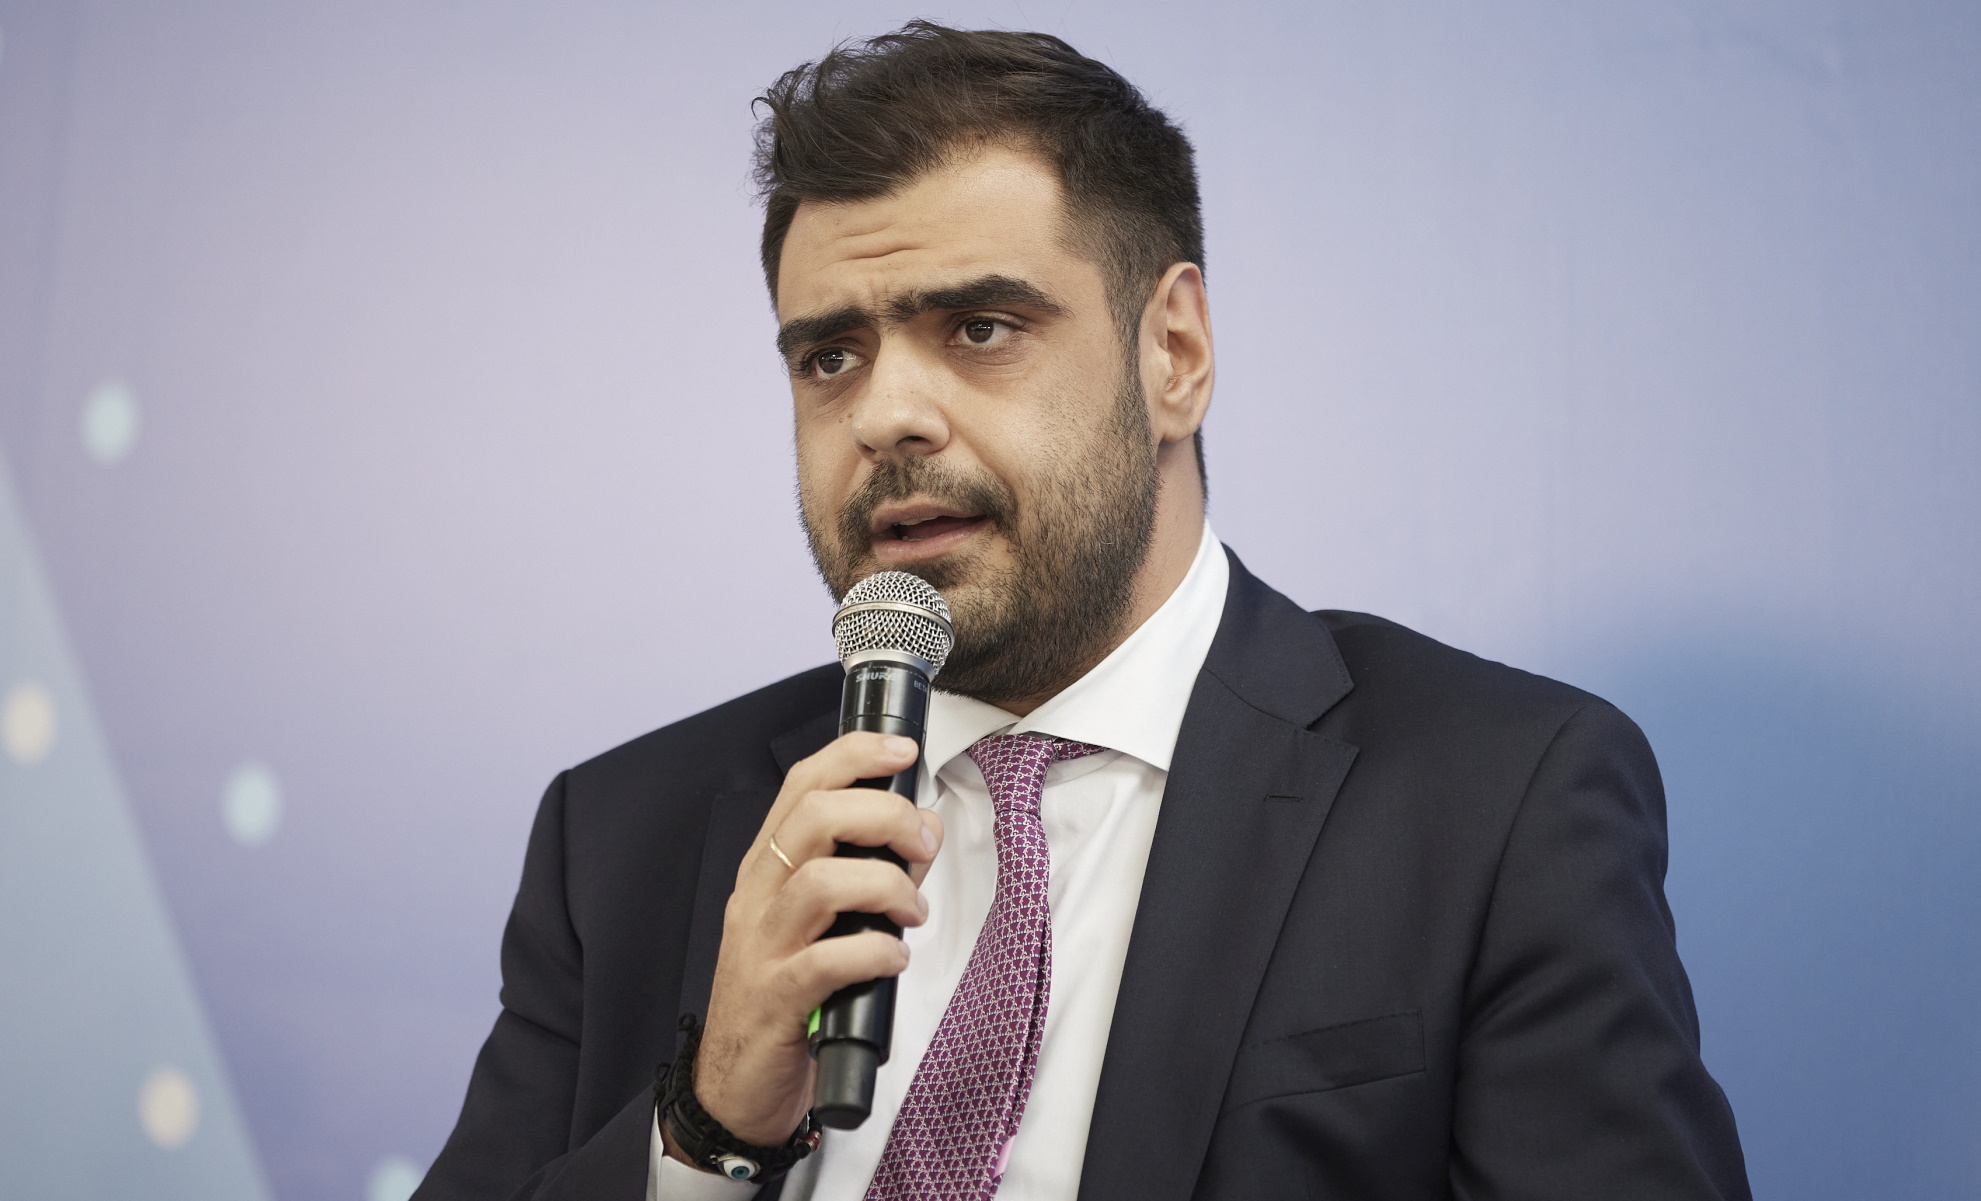 Συνέδριο ΝΔ – Παύλος Μαρινάκης: Αποκαταστήσαμε τη δημοκρατία, κρατήσαμε την Ελλάδα όρθια